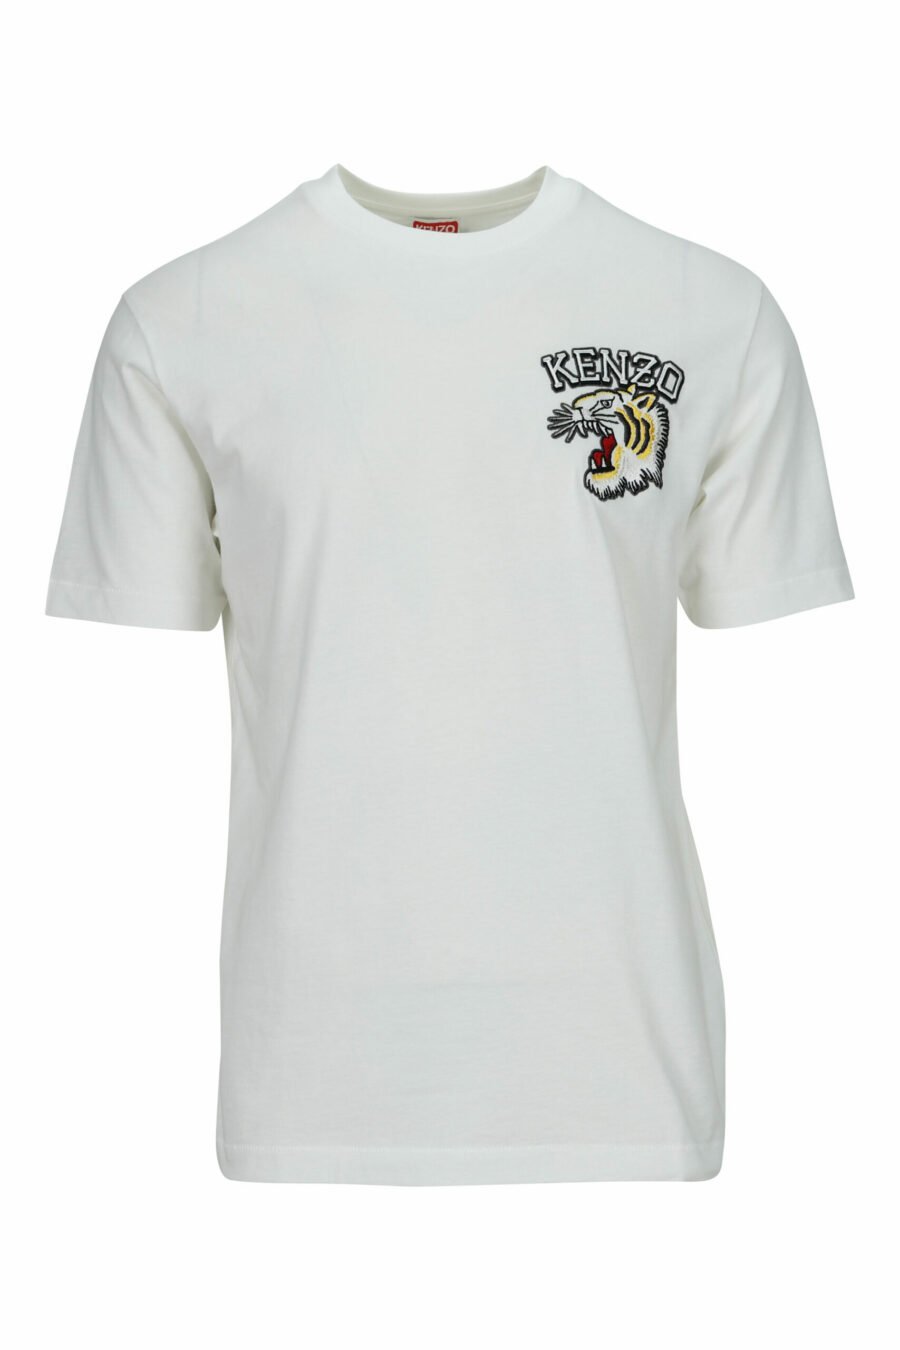 T-shirt blanc surdimensionné avec petit logo tigre en relief - 3612230571716 scaled